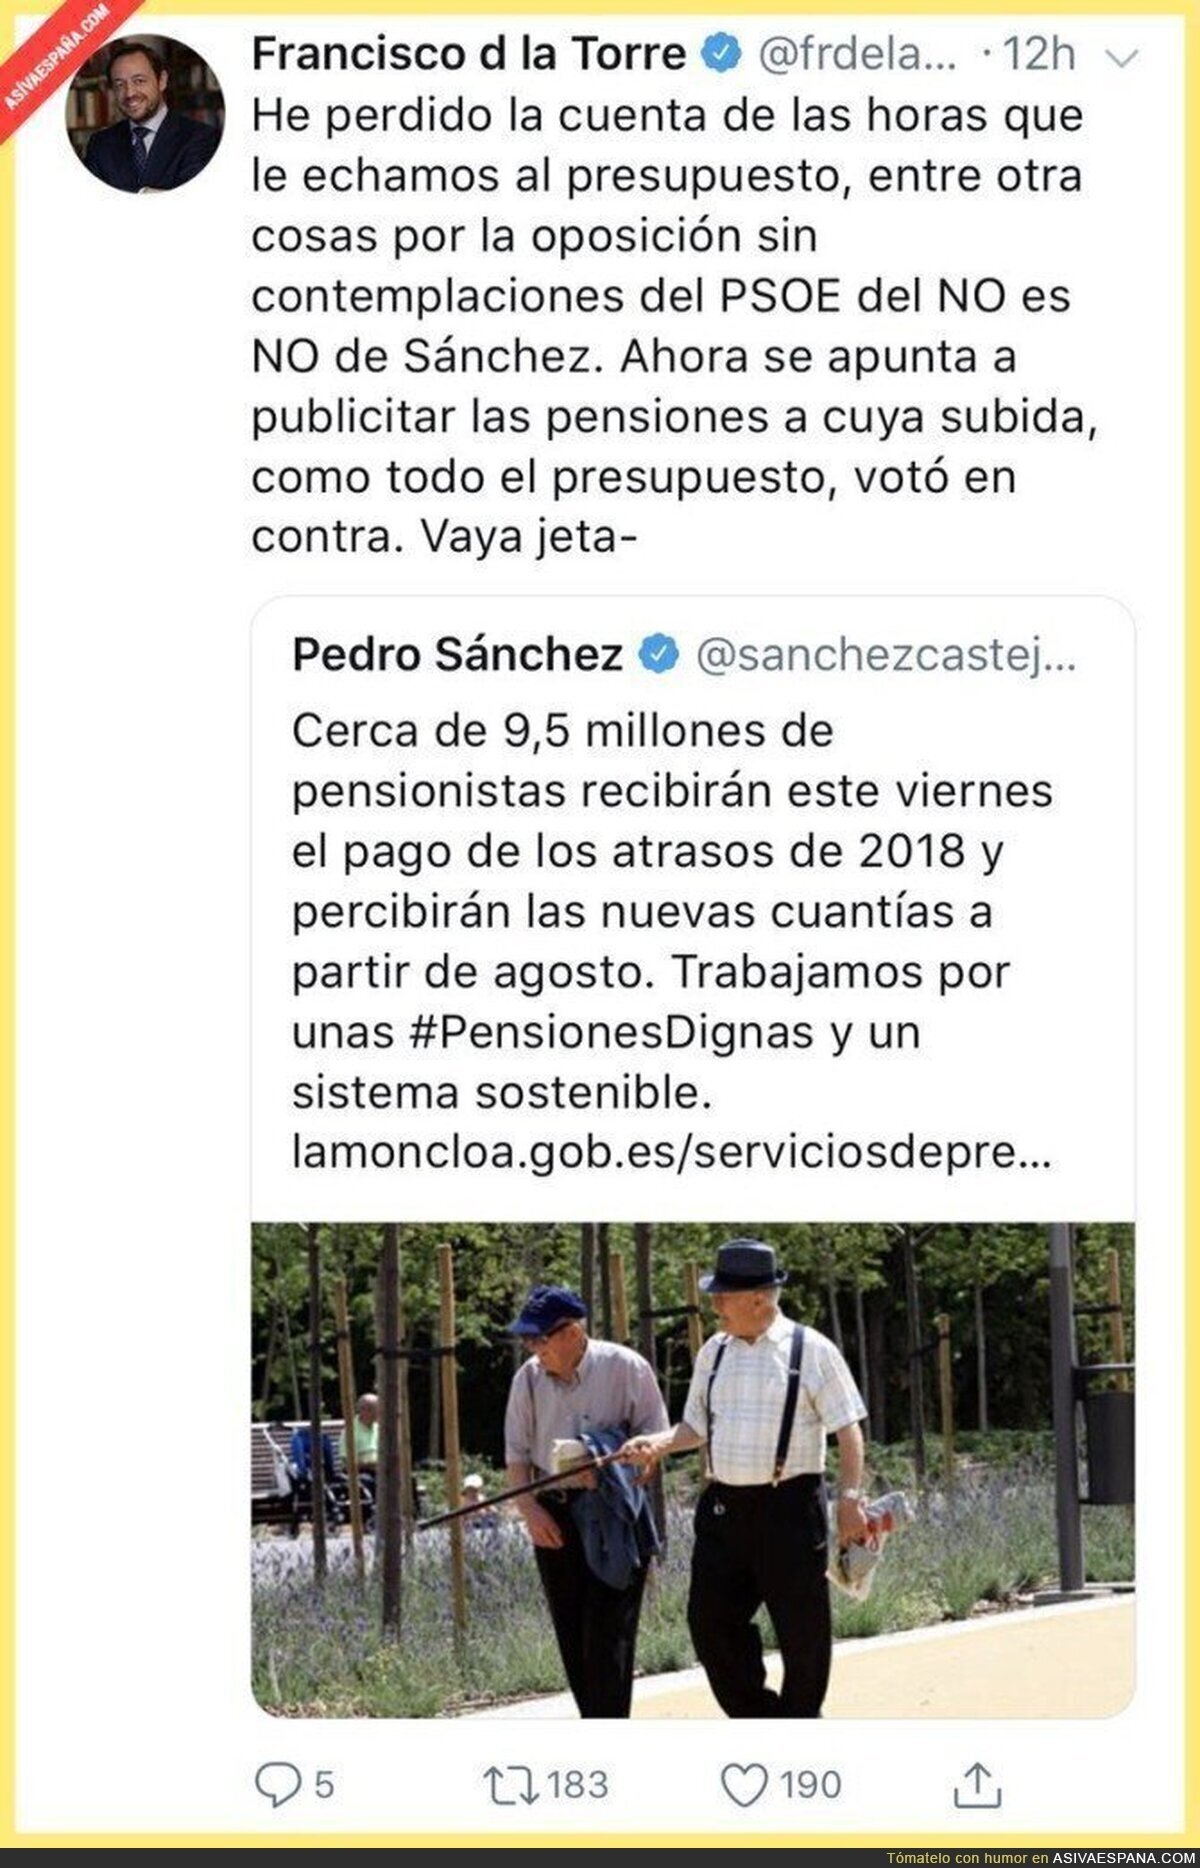 Muy feo lo de Pedro Sánchez intentando apropiarse de los presupuestos que votó en contra